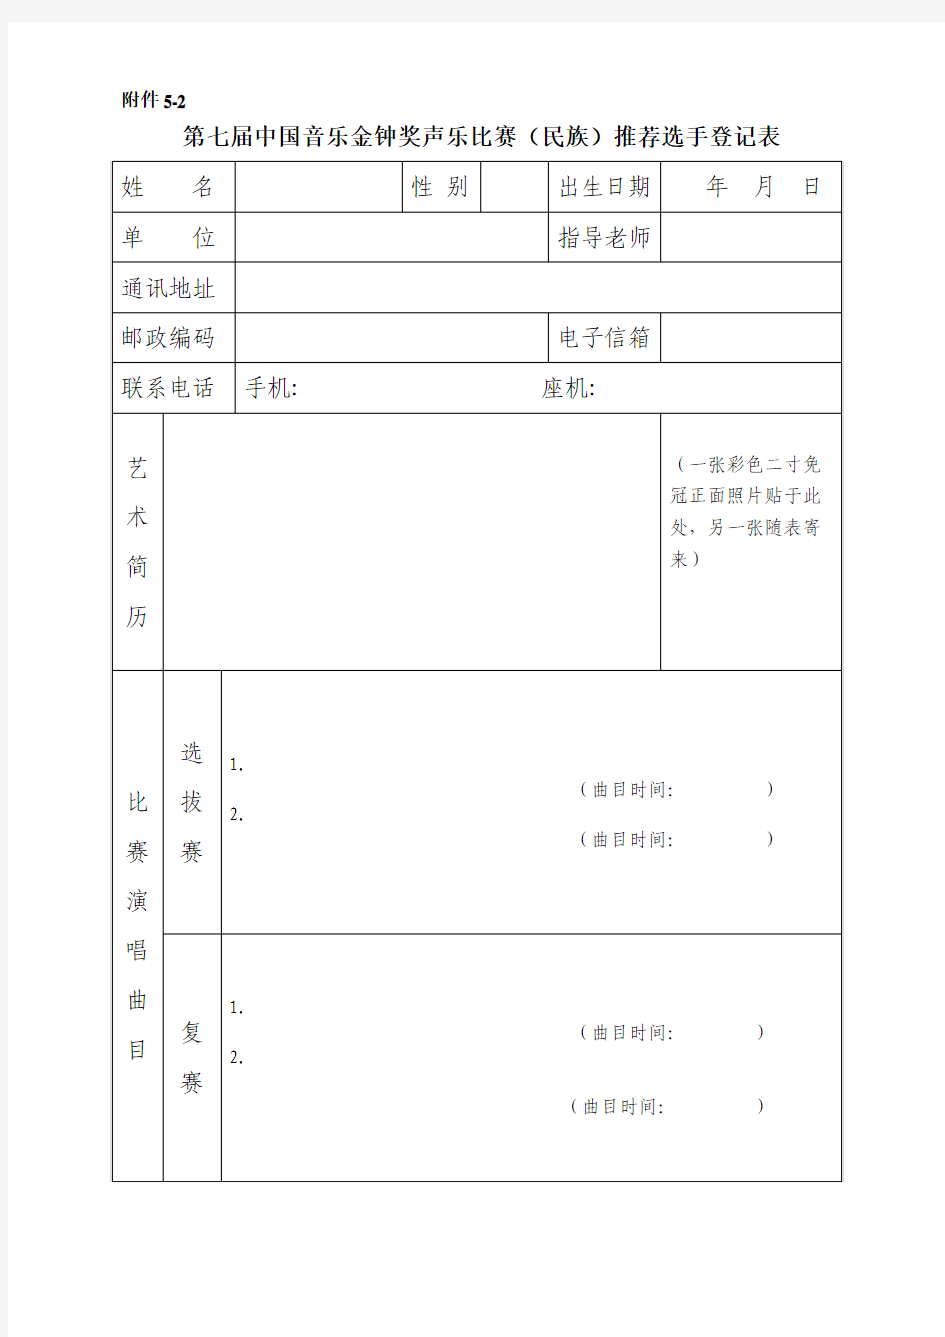 第七届中国音乐金钟奖声乐比赛(民族)推荐选手登记表